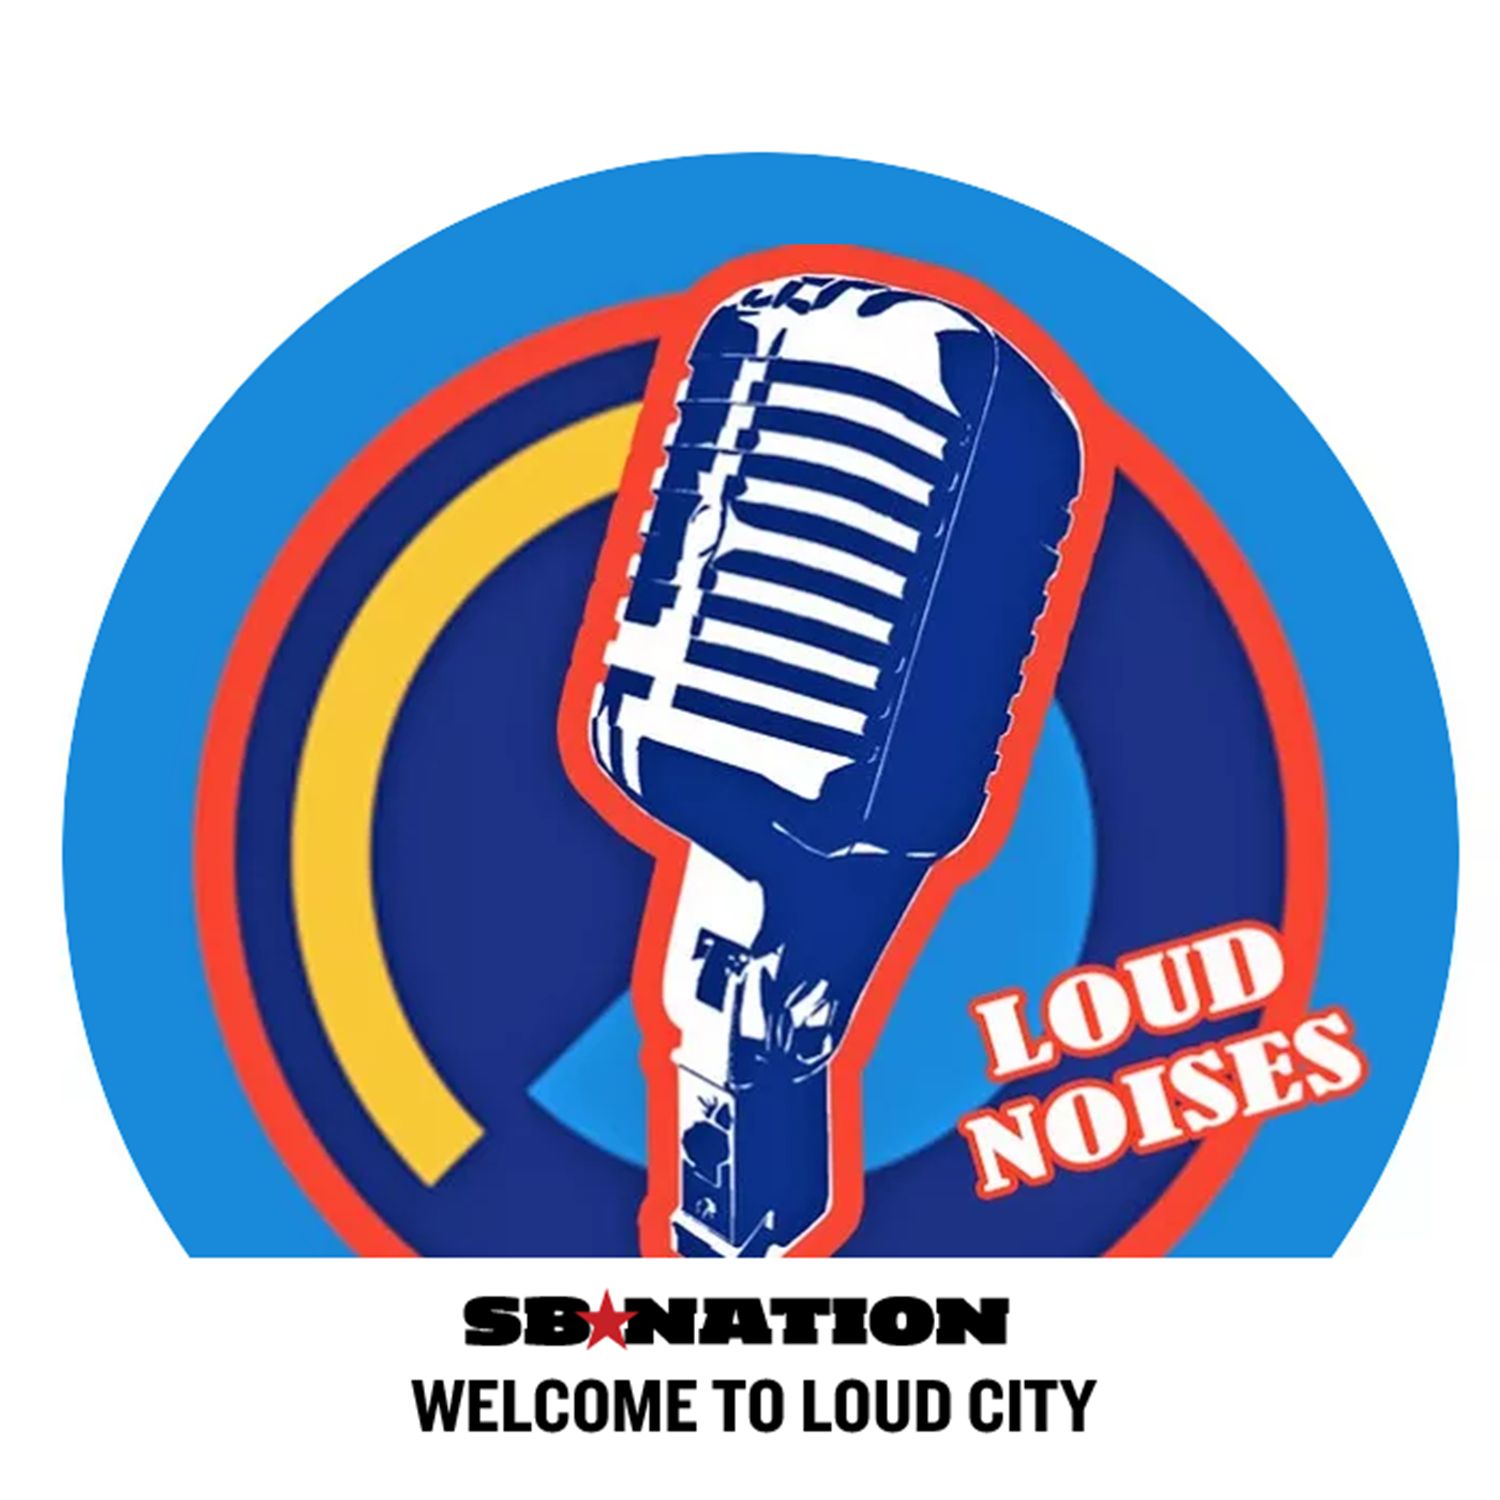 Loud Noises Episode 41